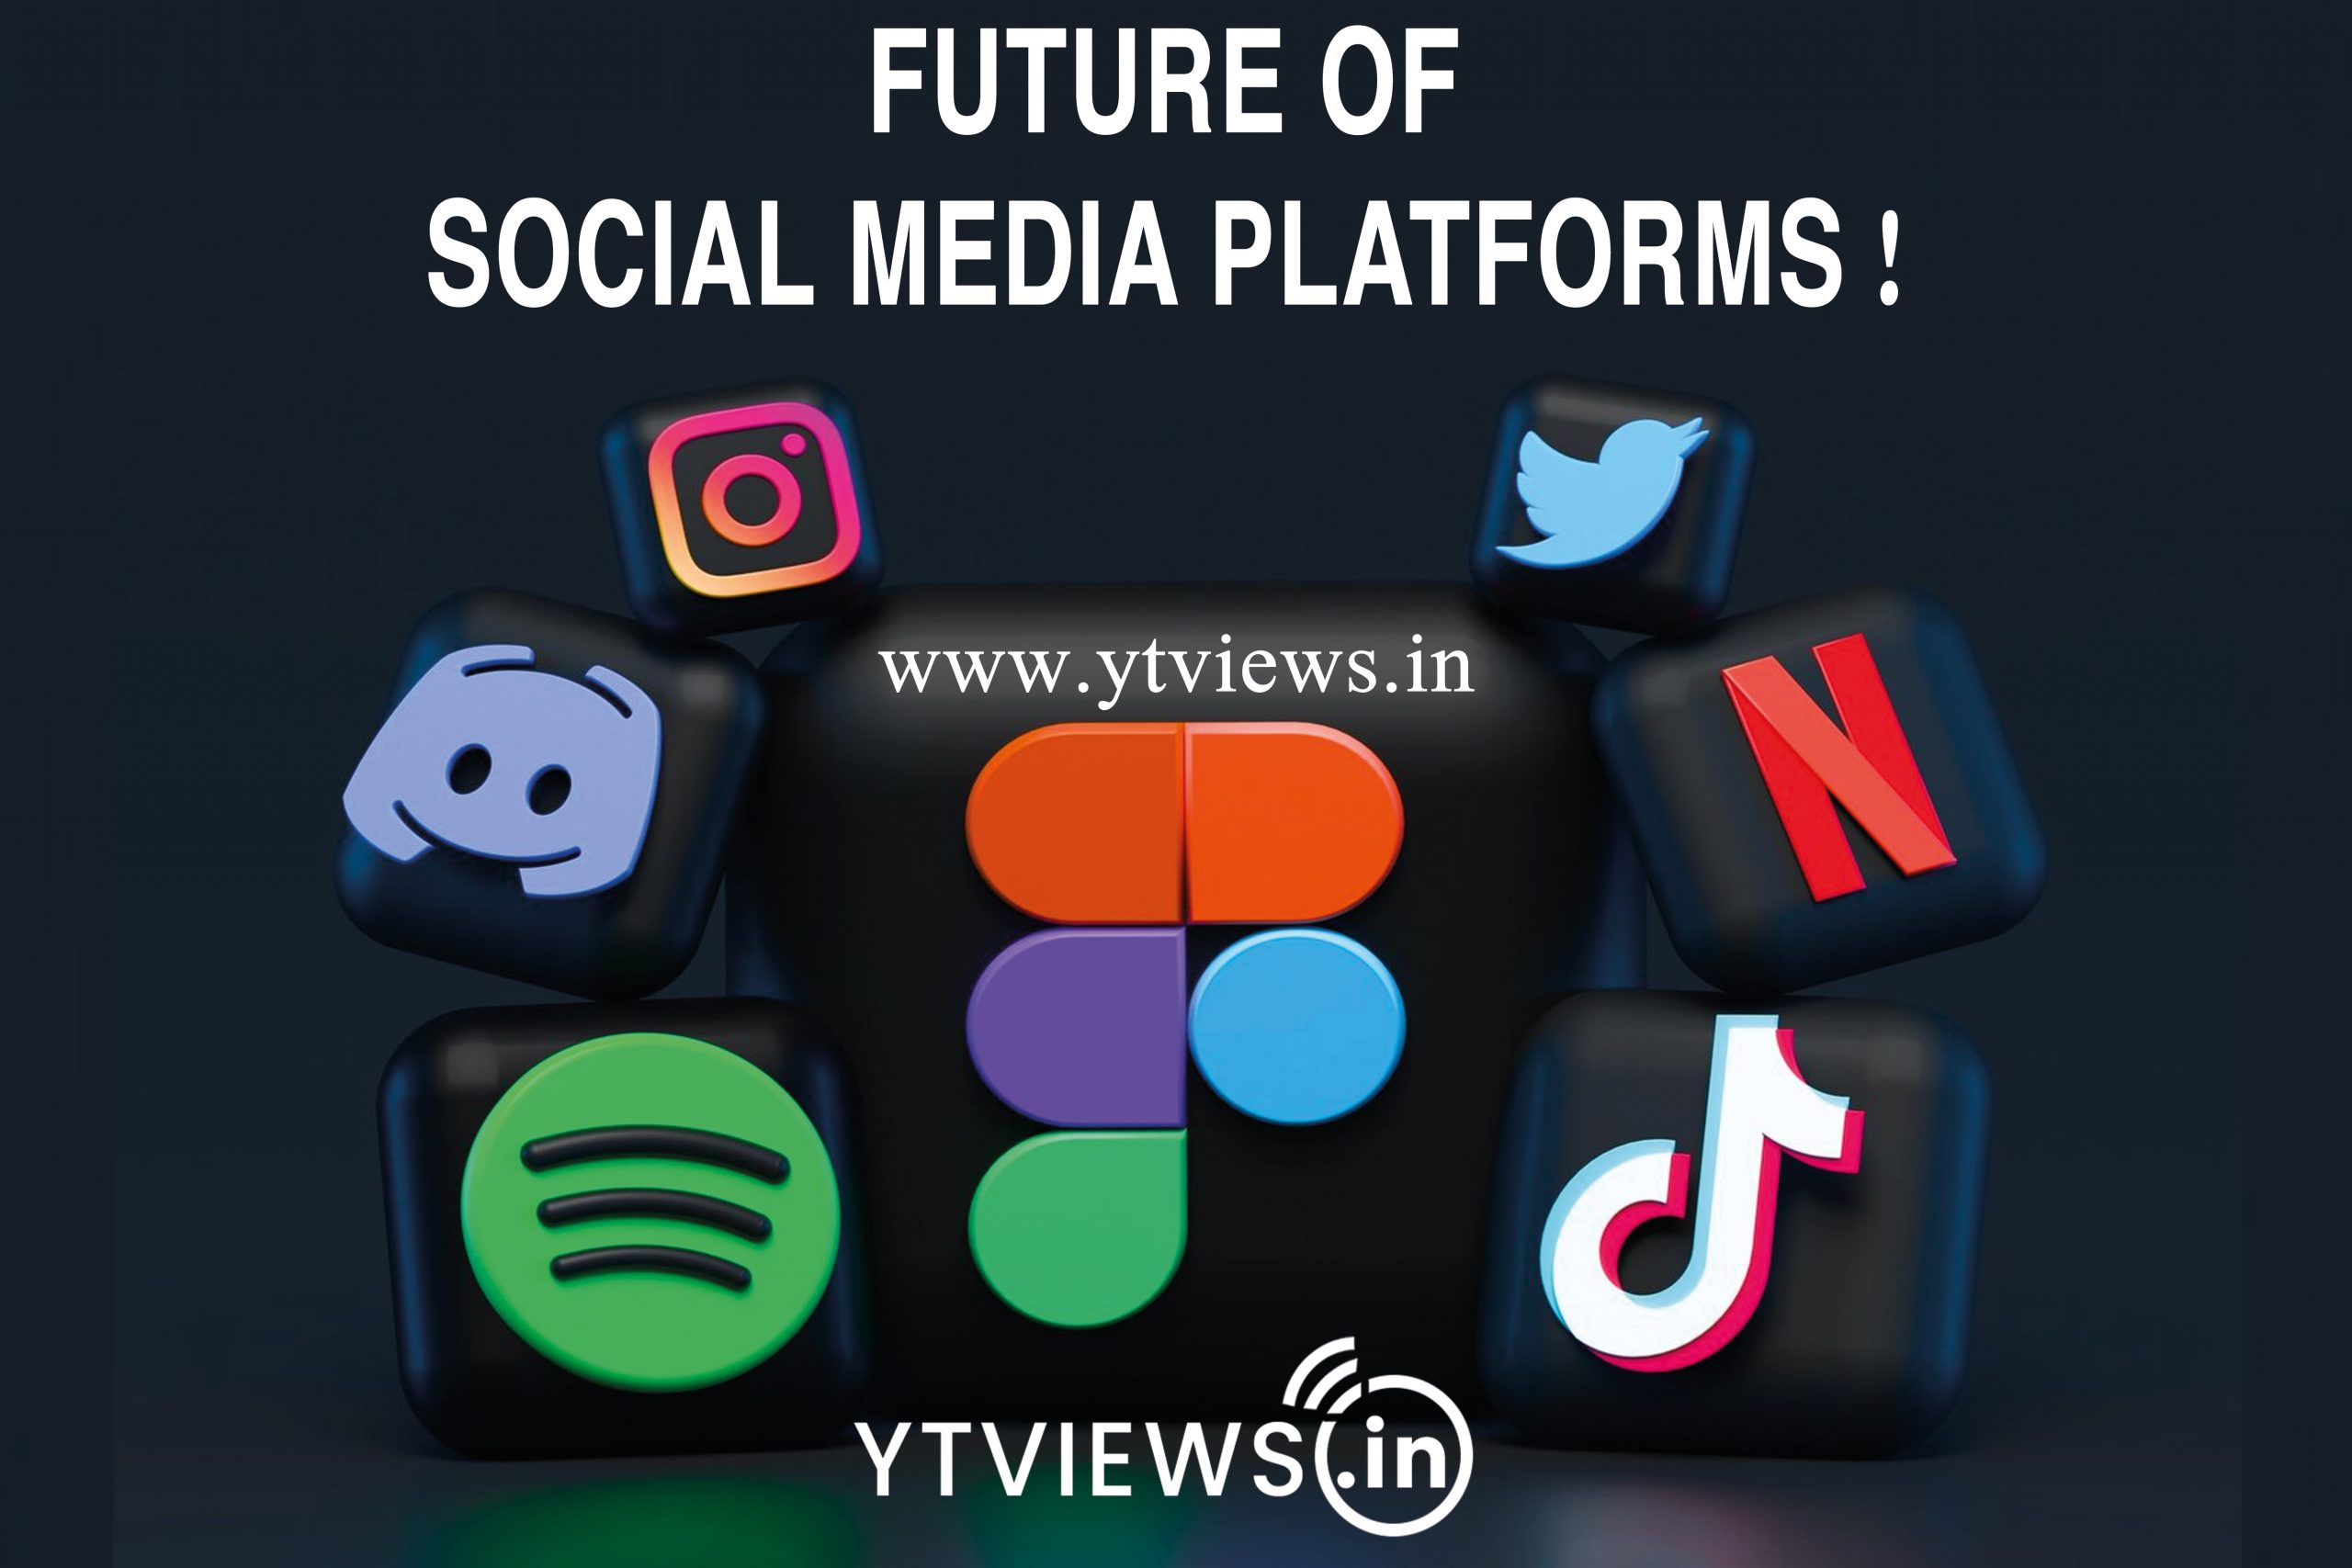 Future of social media platforms